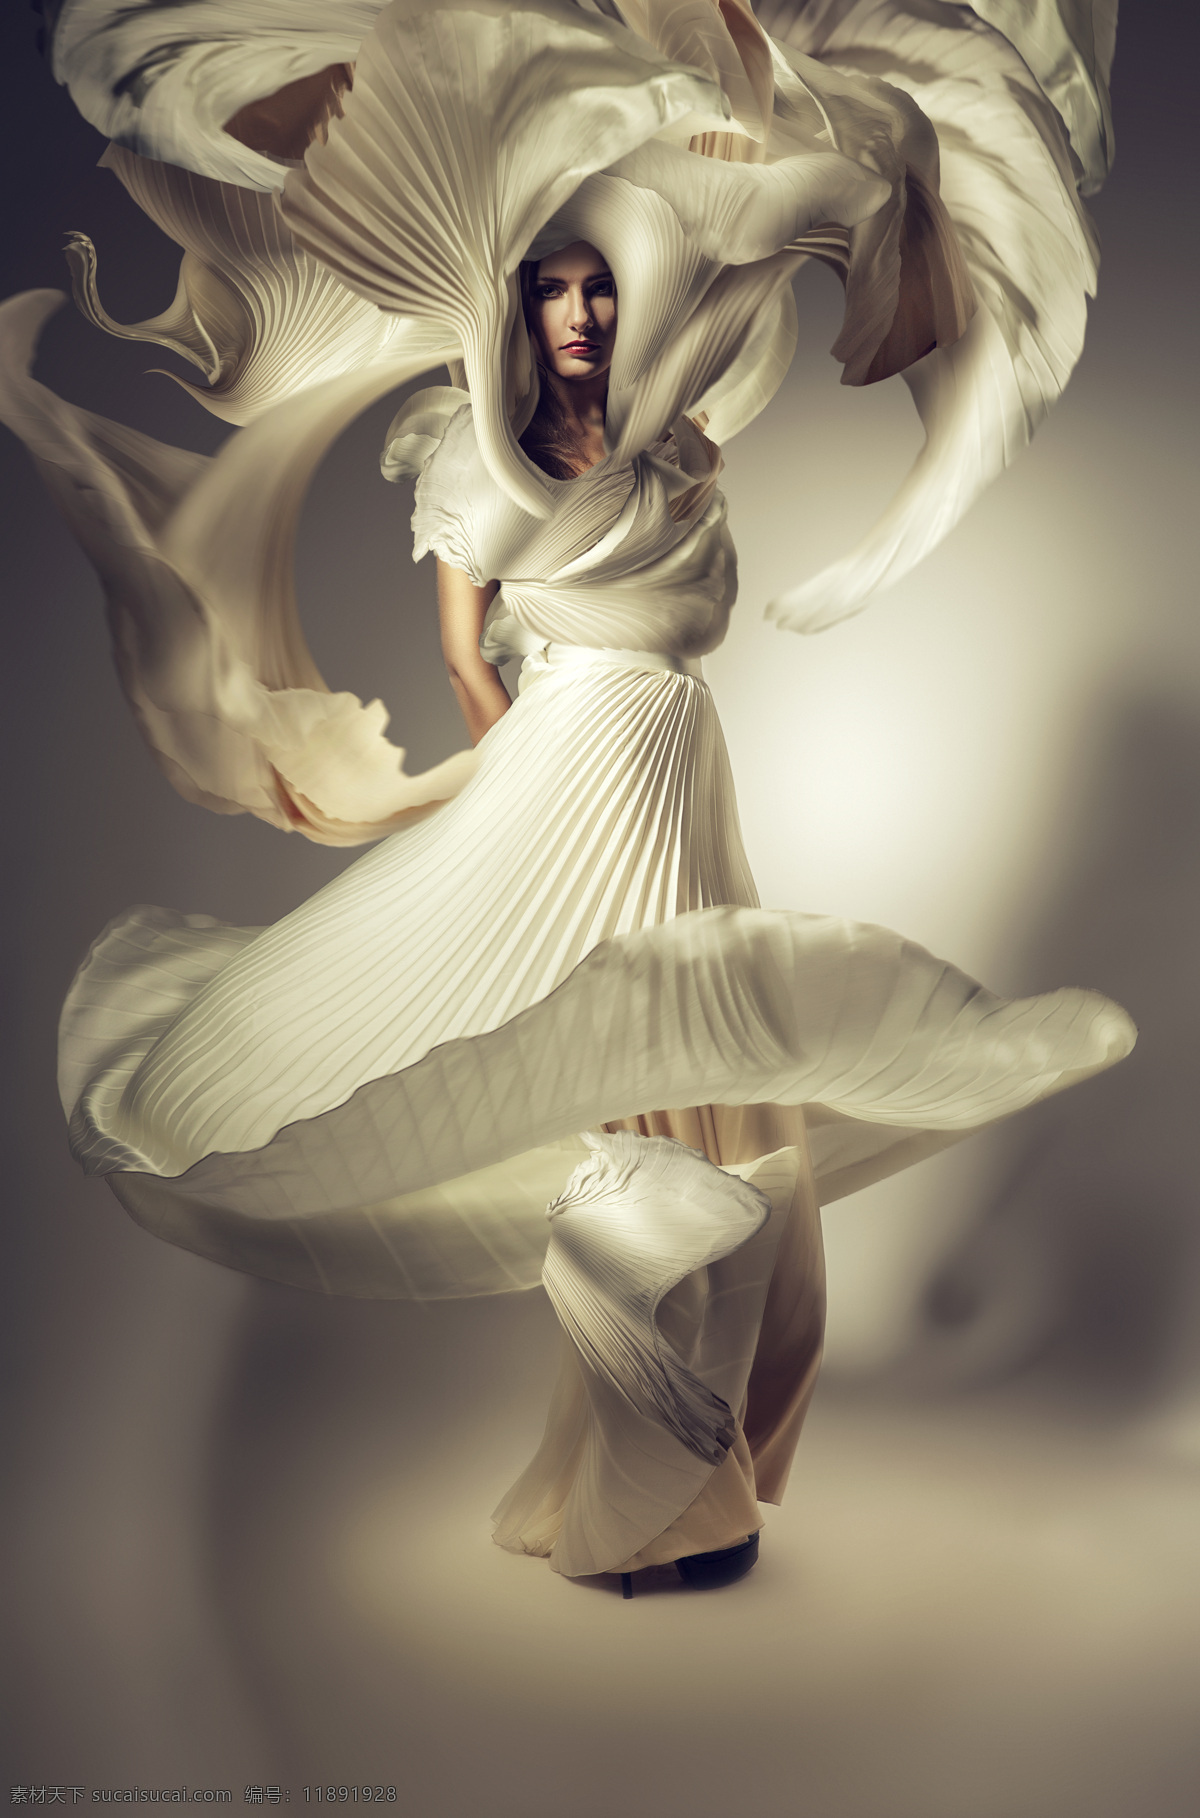 白色 衣服 裙子 模特美女 性感美女 白色礼服 时尚美女 美女模特 美女写真 外国女性 外国女人 美女图片 人物图片